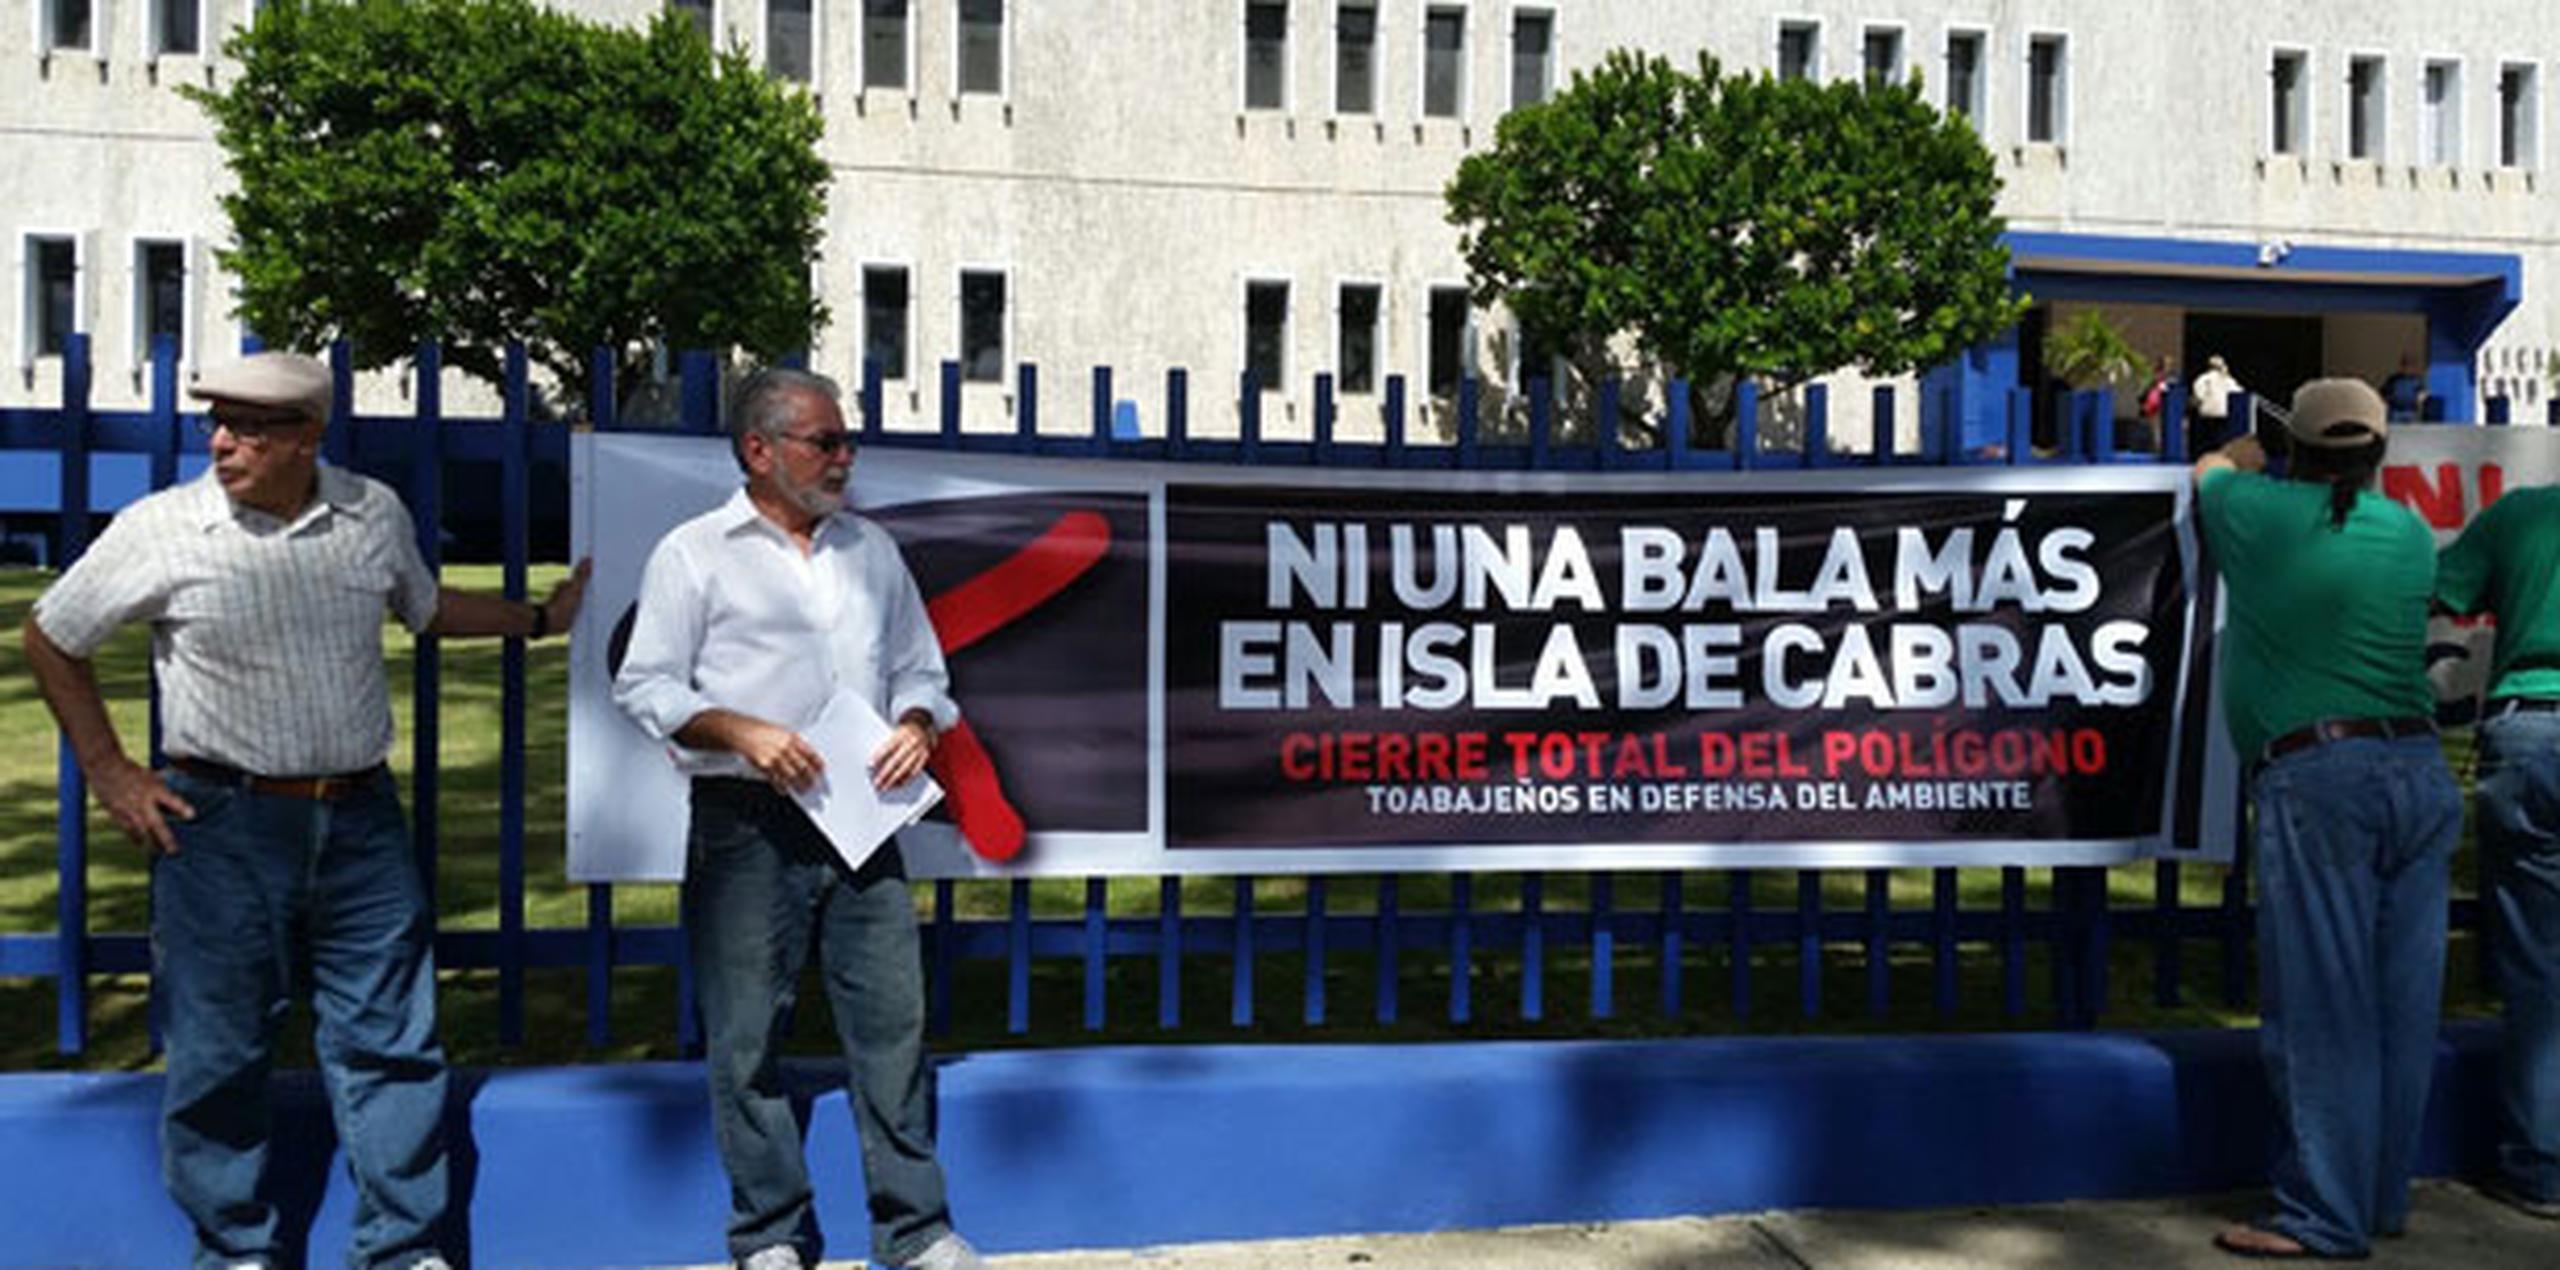 El portavoz de la agrupación, Juan Camacho, hizo la advertencia frente al Cuartel General de la Policía, en Hato Rey. (Suministrada)